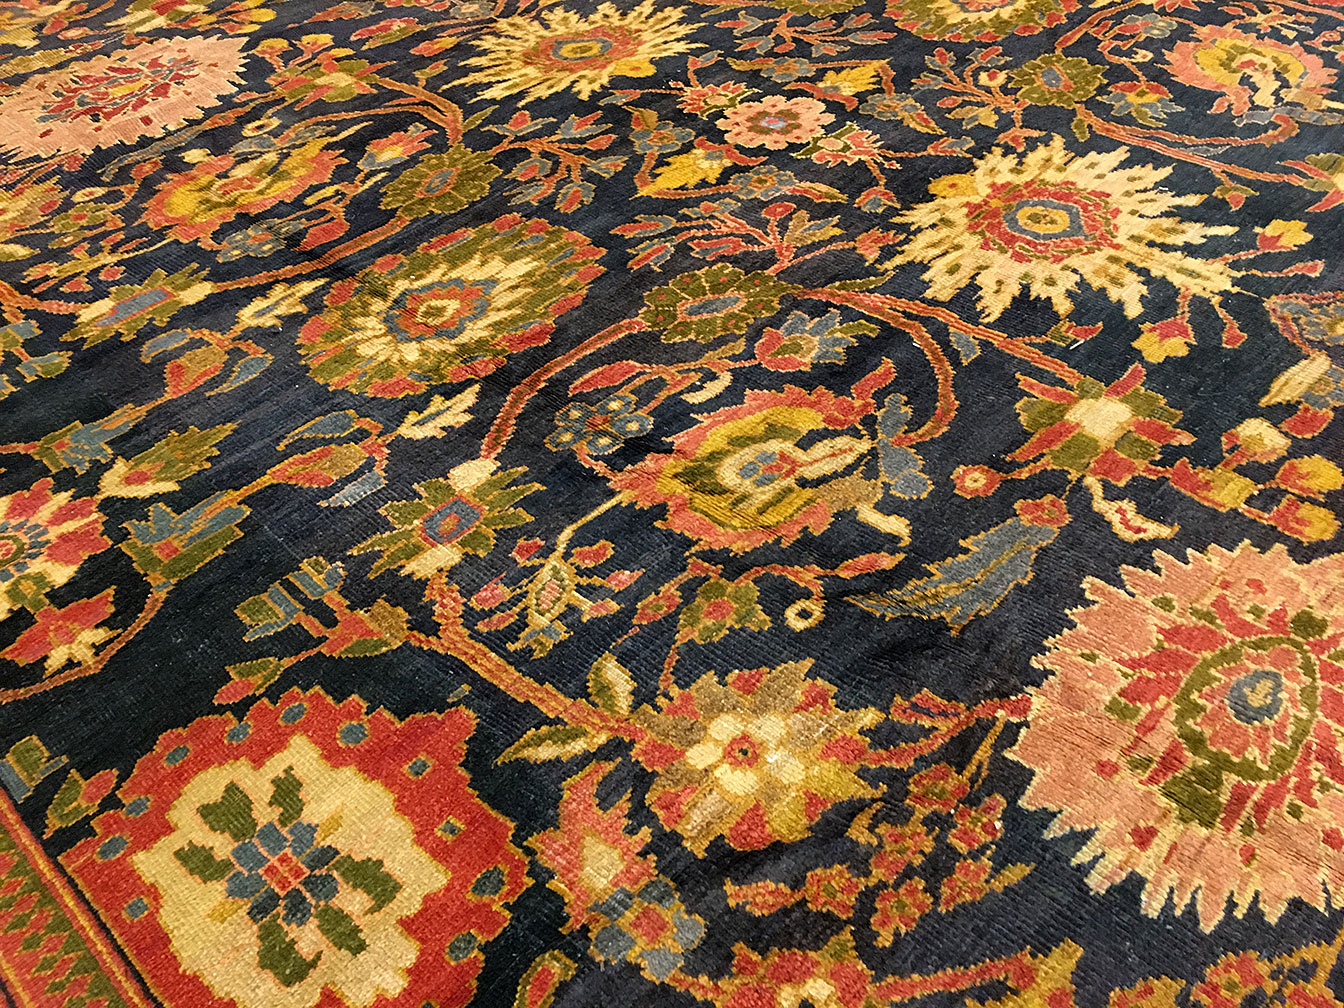 Antique sultan abad Carpet - # 50034